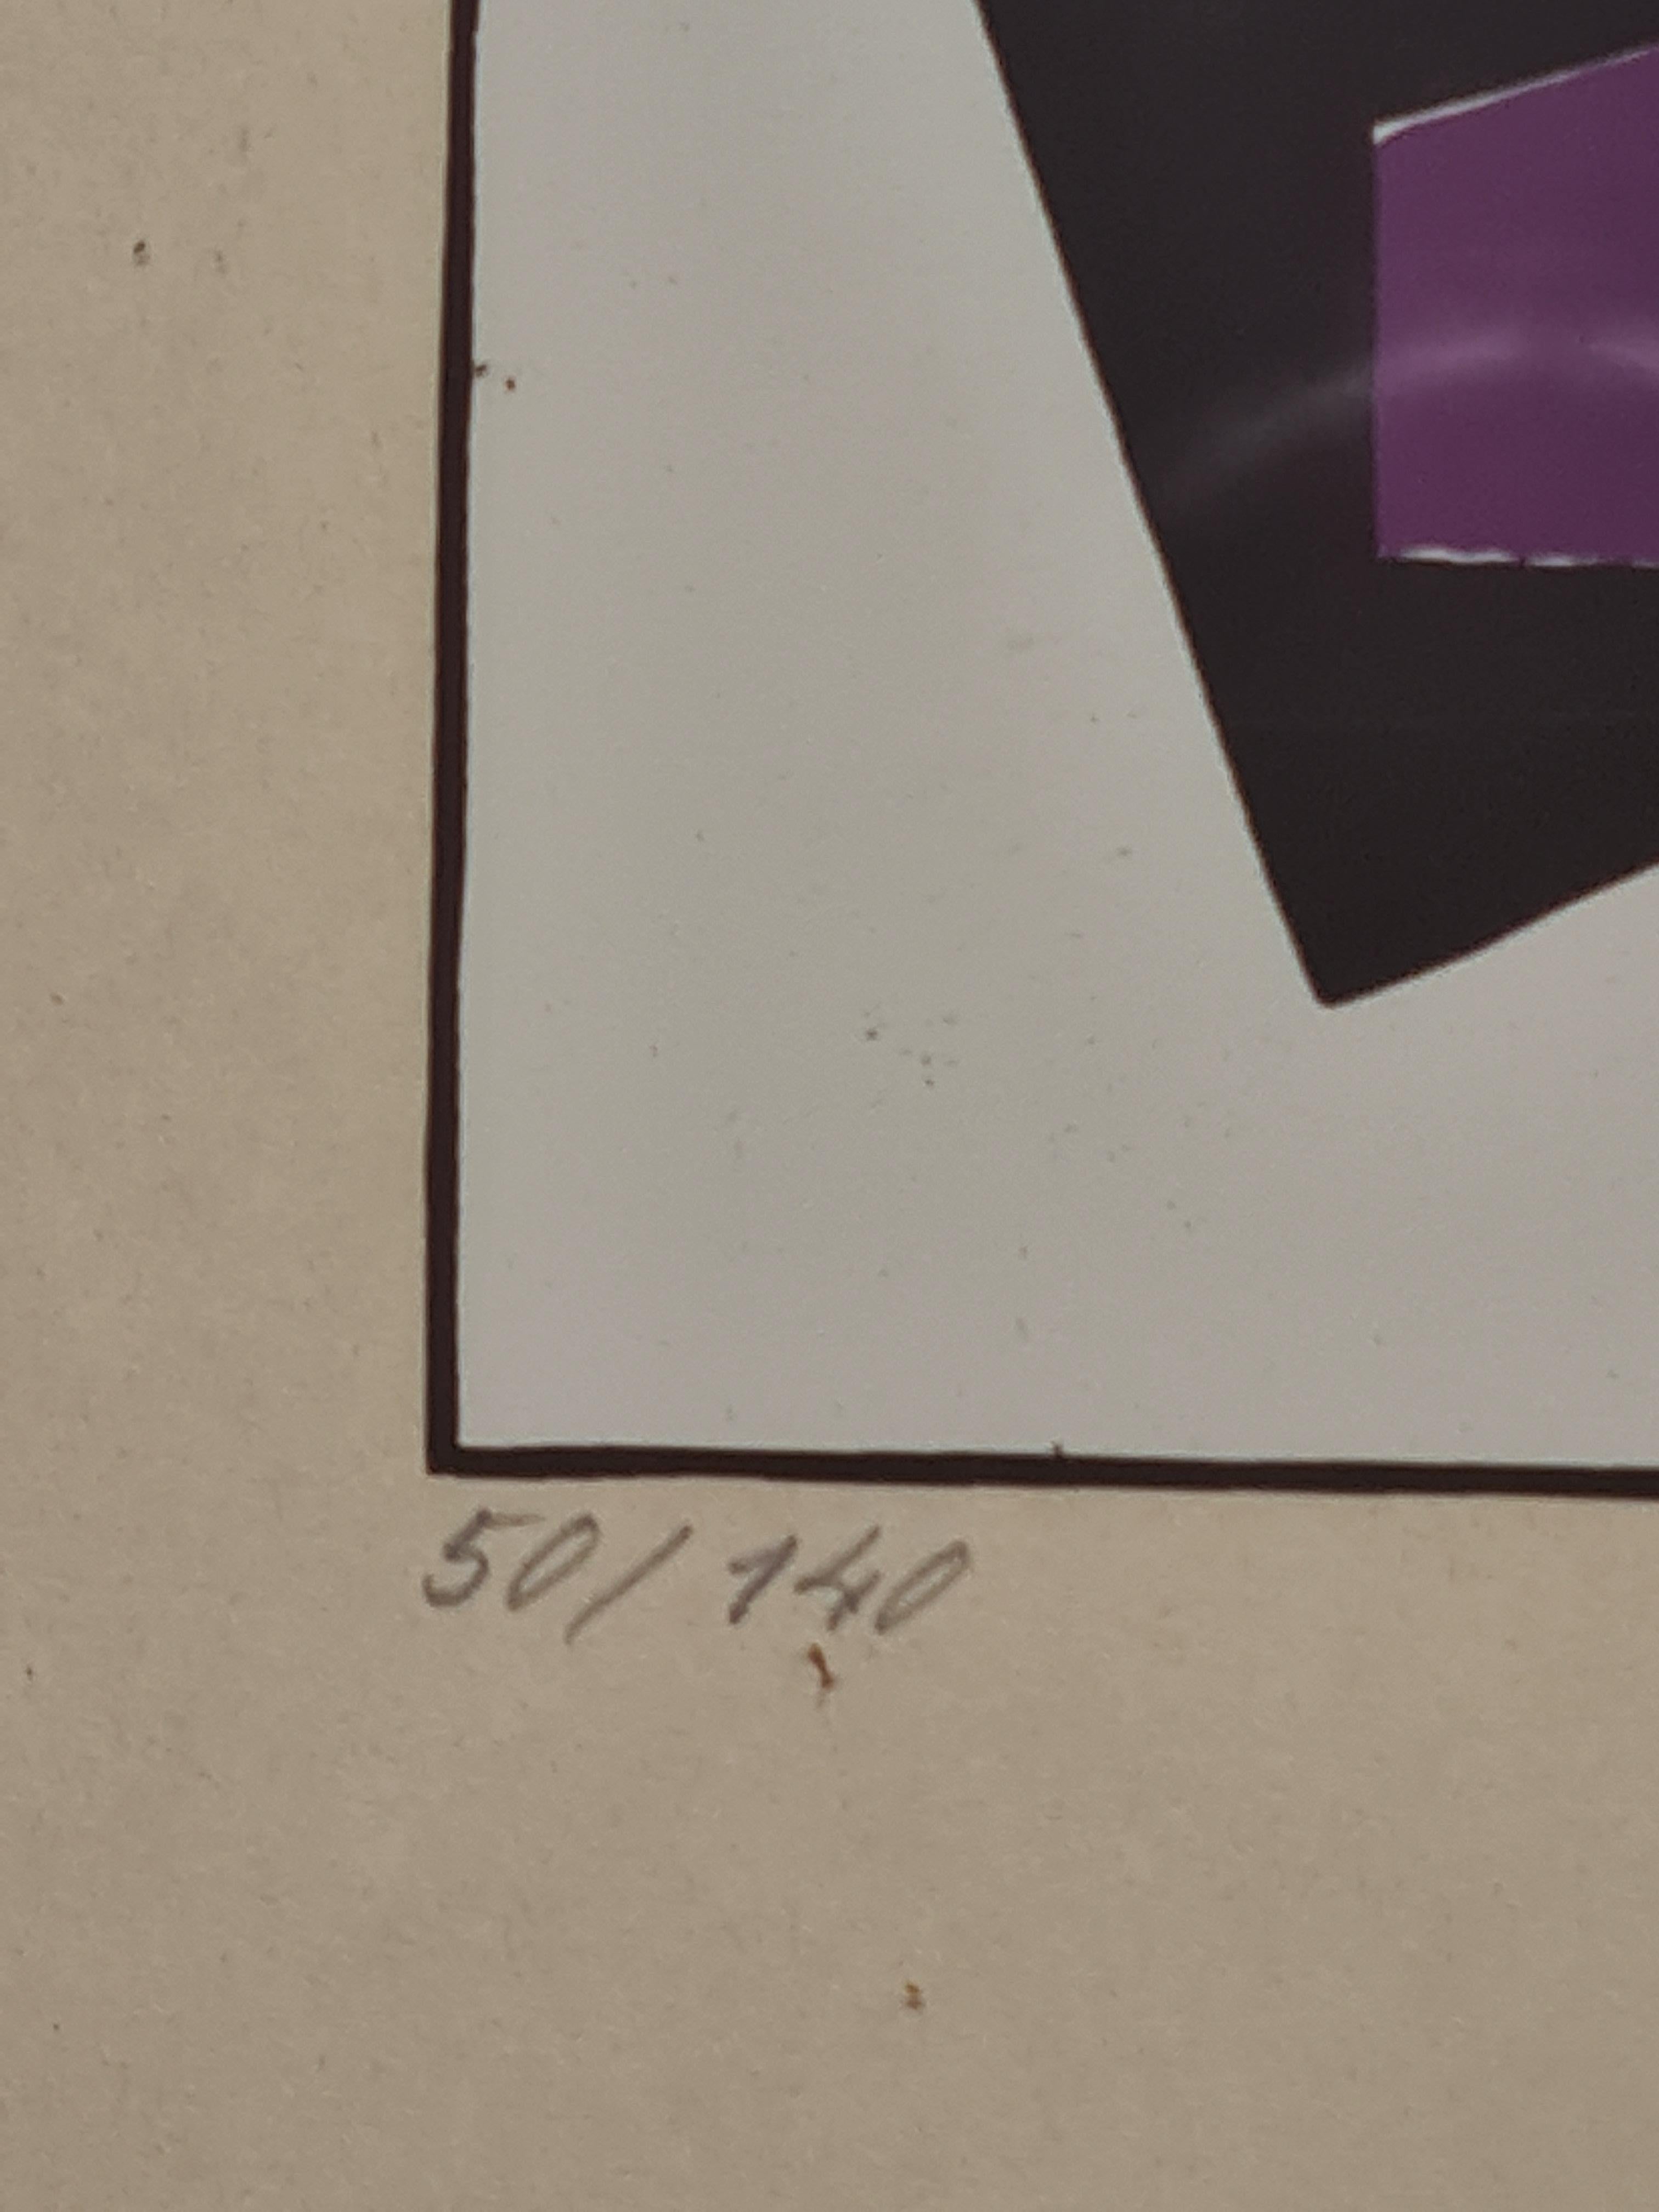 Un feuillet folio de l'album MA de Sándor Bortnyik. Signée au crayon par l'artiste en bas à droite, numérotée au crayon en bas à gauche, numéro 50 de l'édition de 140. Présenté dans un cadre en bois uni sous verre.

Cette œuvre lithographique a été